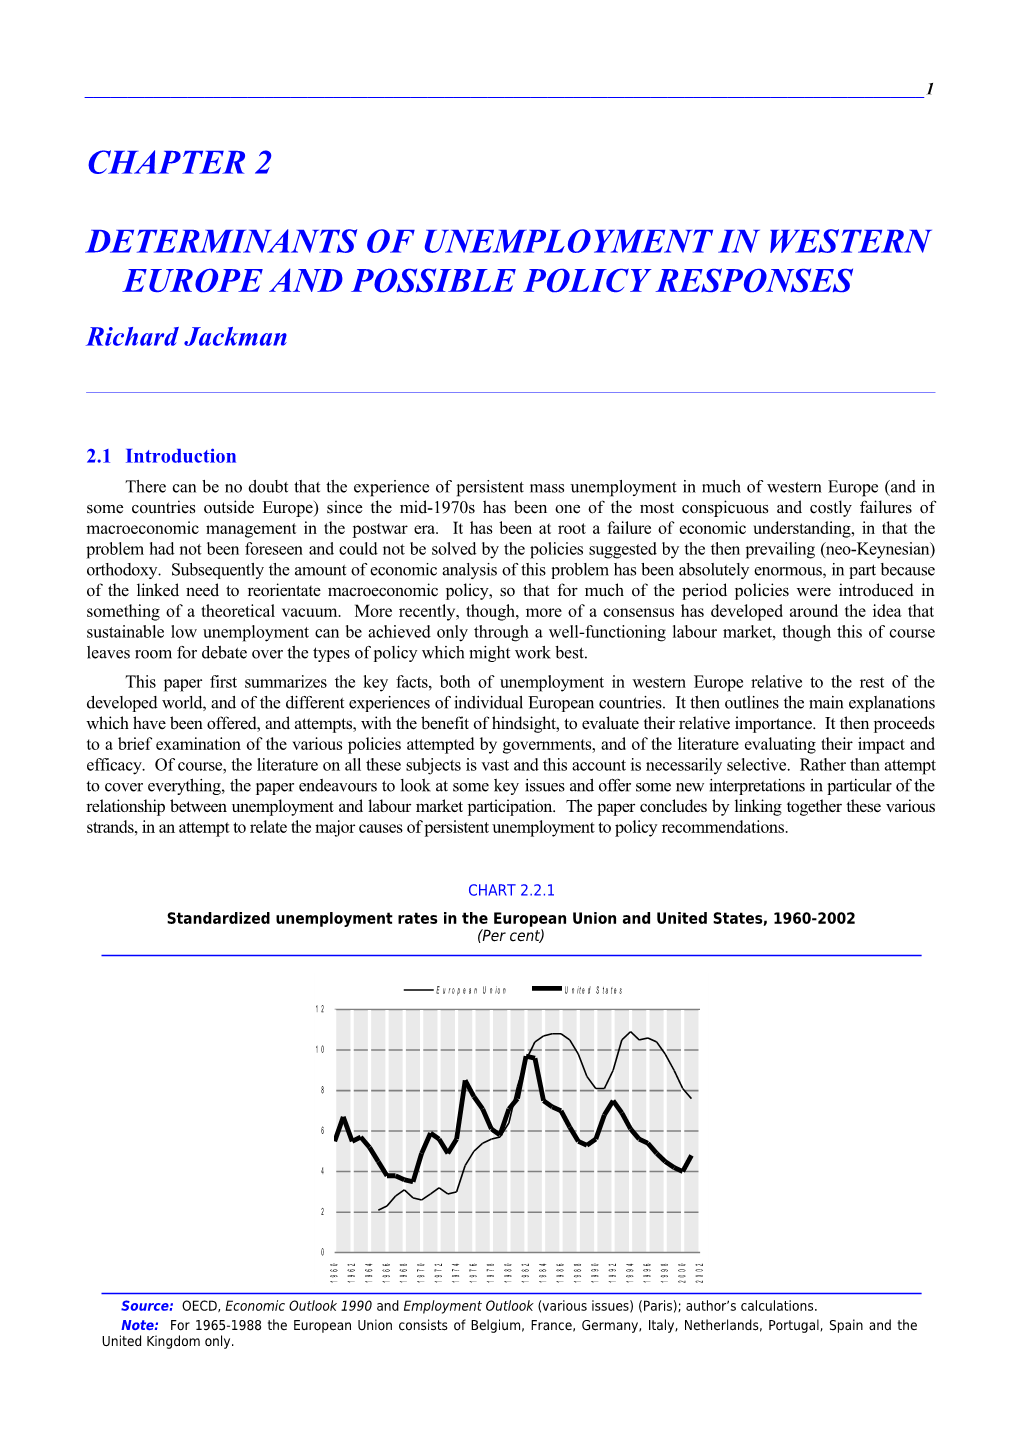 Determinants of Unemployment in Western Europe